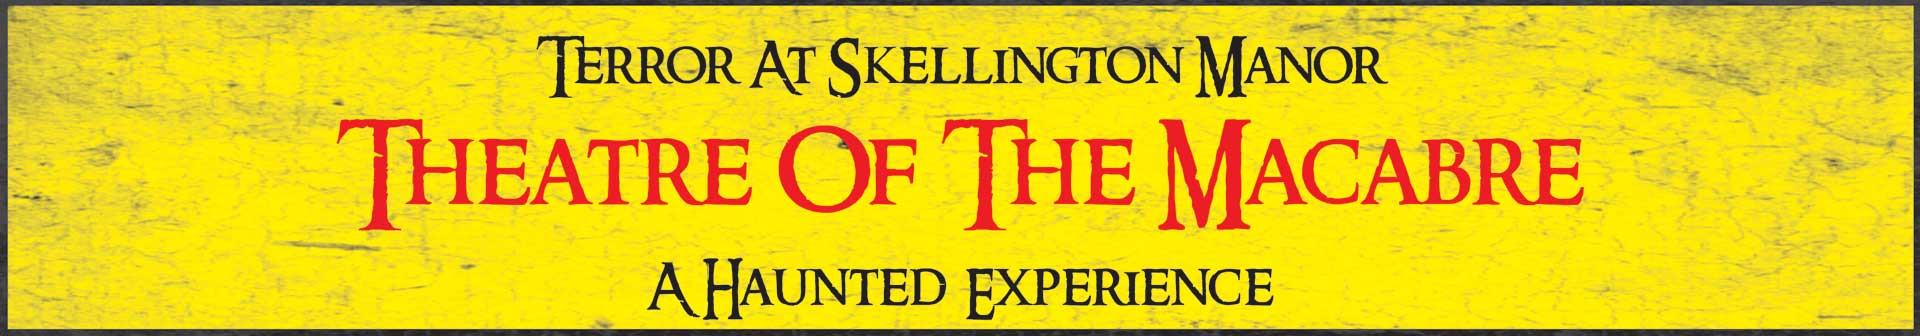 Terror At Skellington Manor: Theatre Of The Macabre